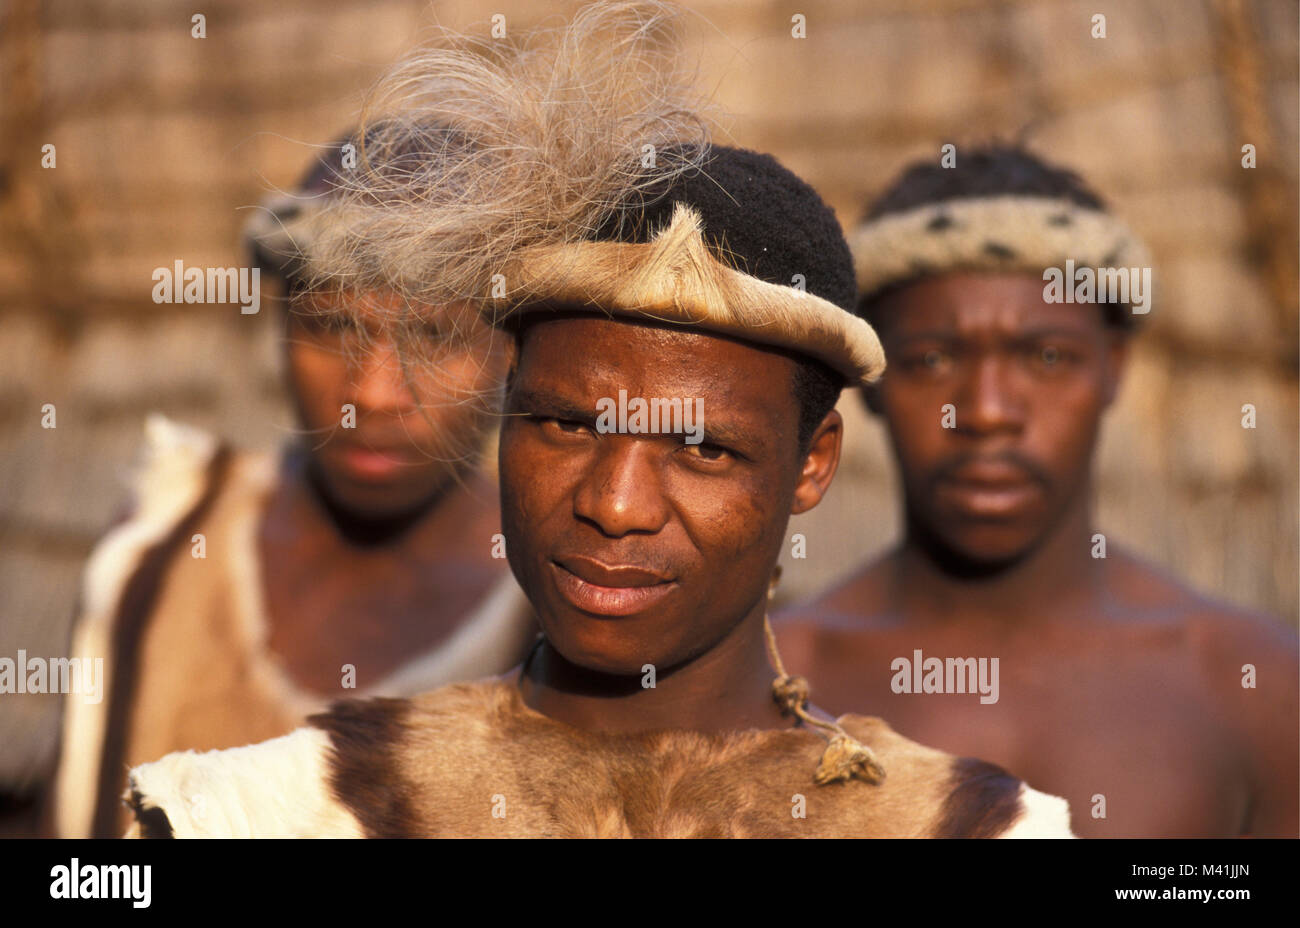 South Africa. Near Pretoria. Men of Zulu tribe. Stock Photo